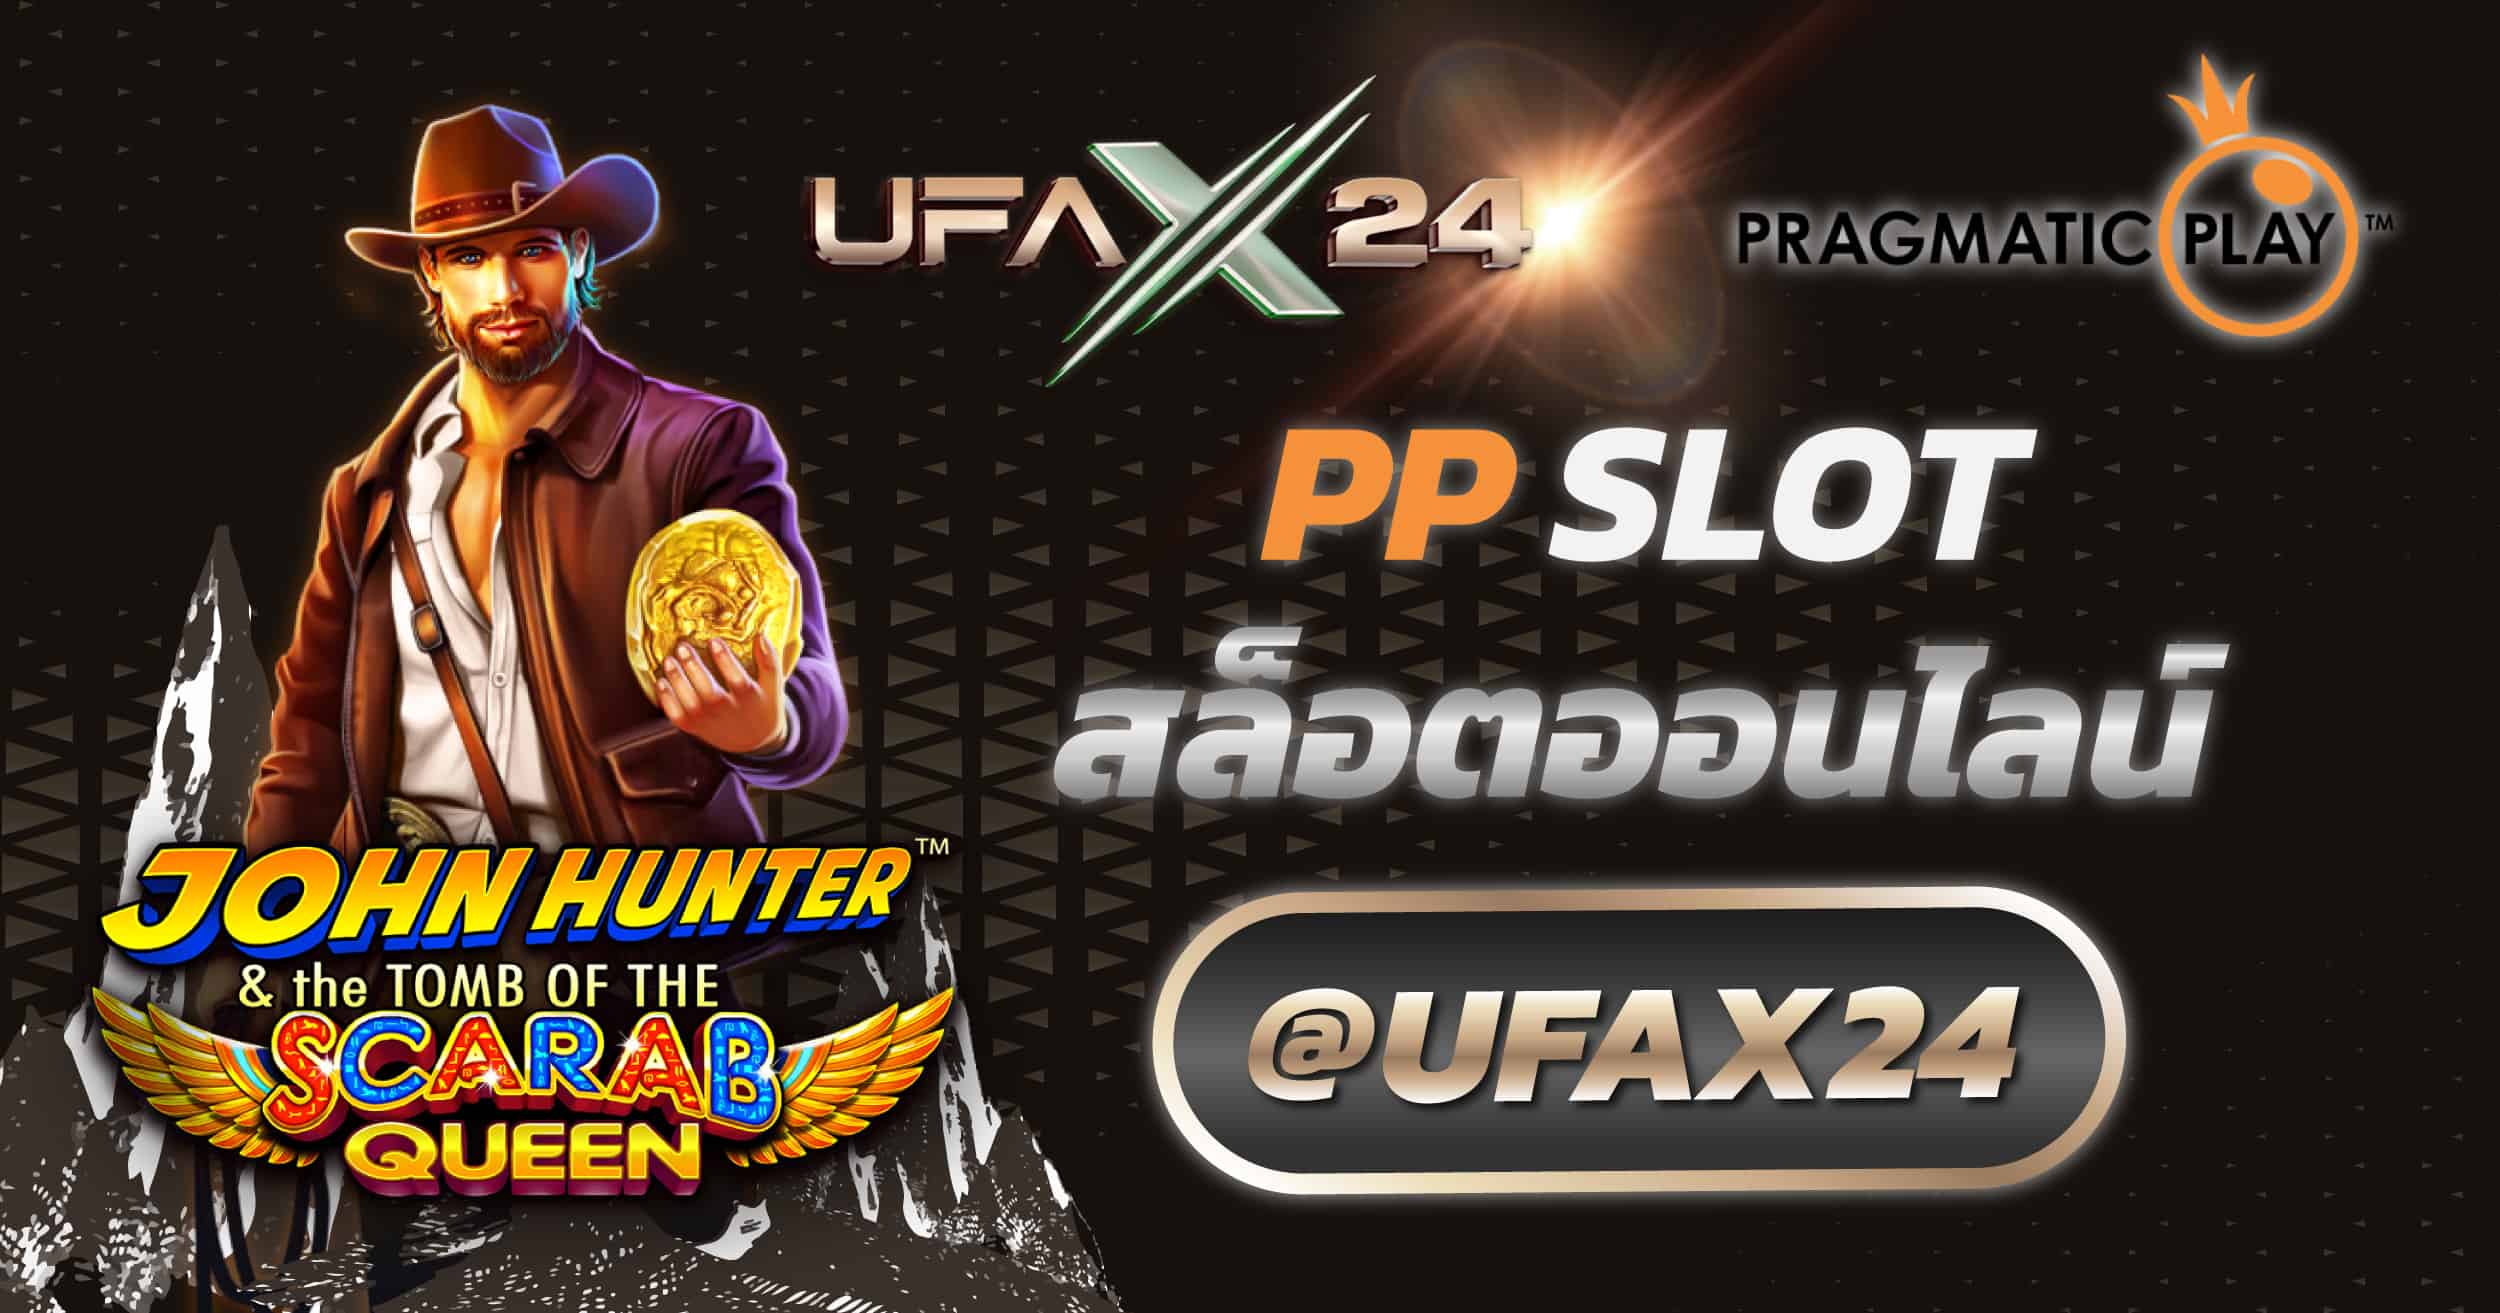 PP Slot เกมสล็อตแตกง่าย ufax24 เว็บแทงบอล แทงบอลออนไลน์ ที่ดีที่สุด